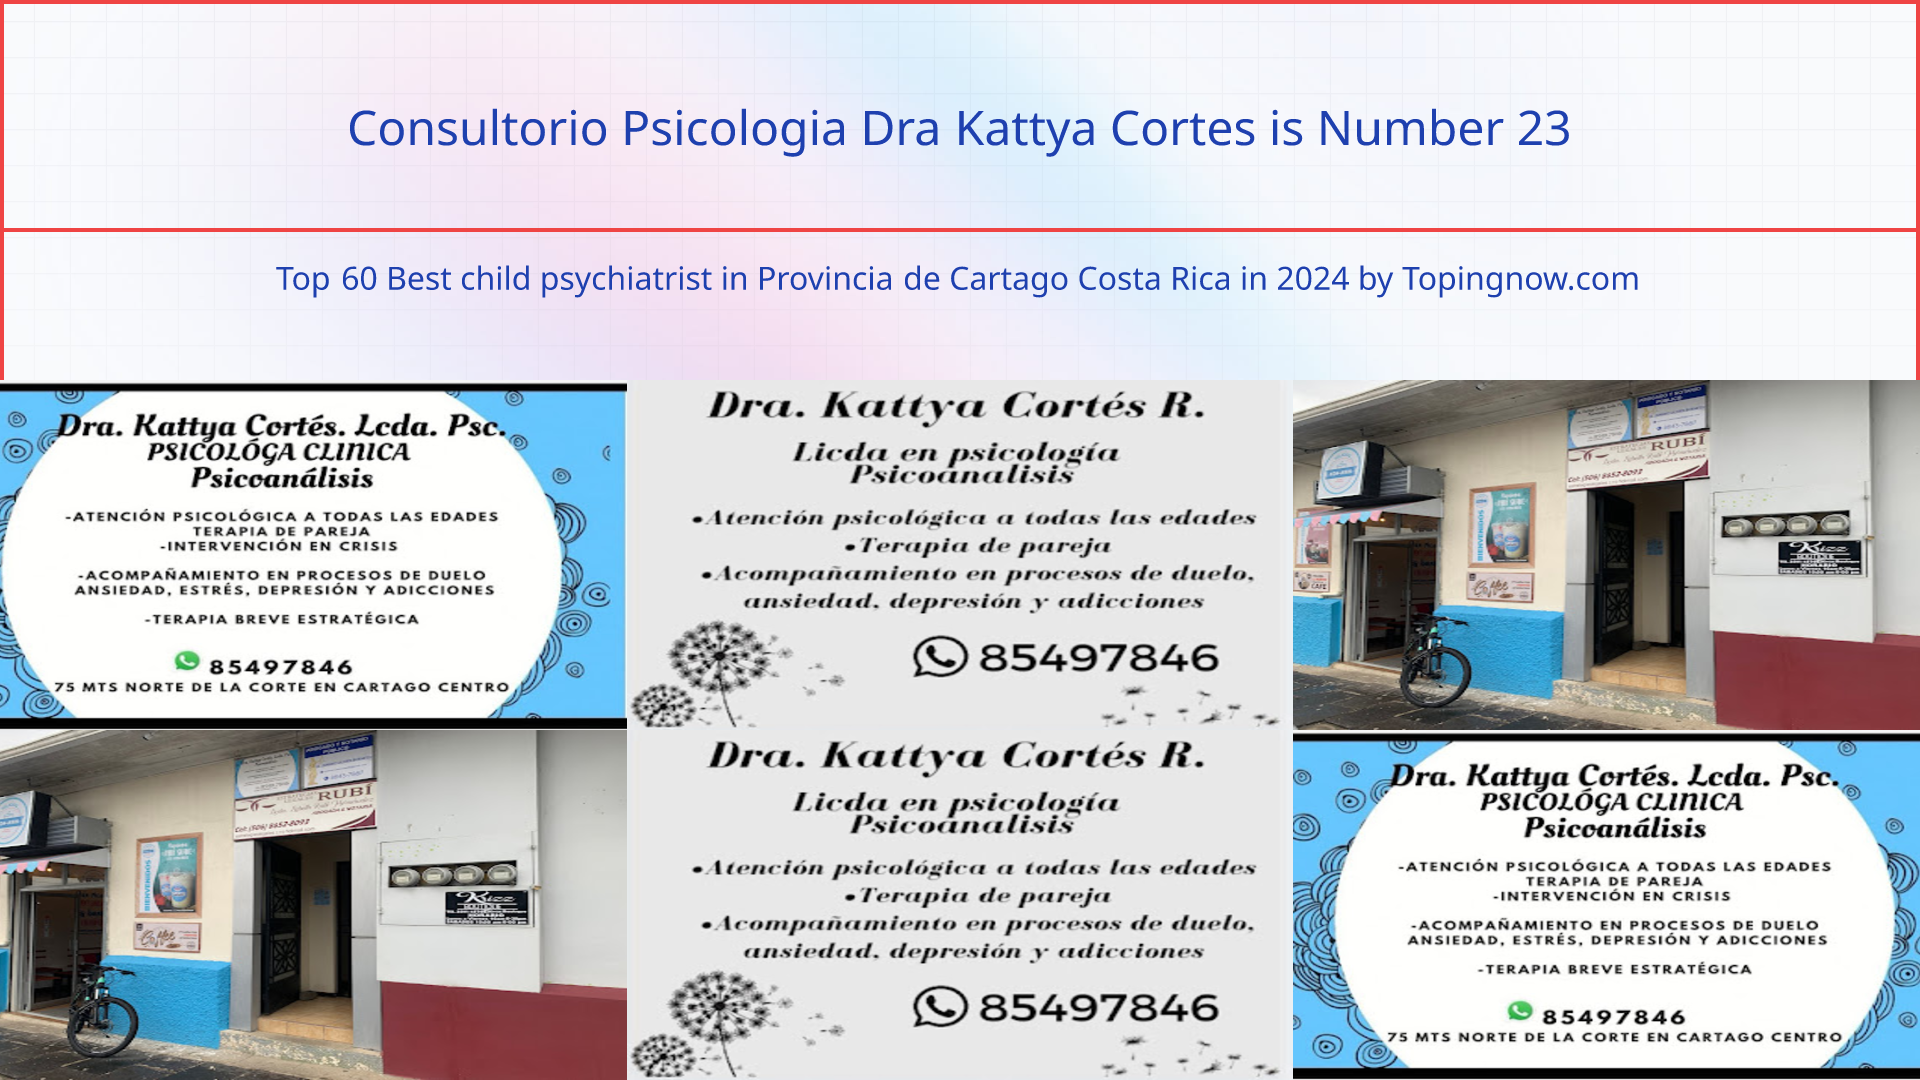 Consultorio Psicologia Dra Kattya Cortes: Top 60 Best child psychiatrist in Provincia de Cartago Costa Rica in 2024